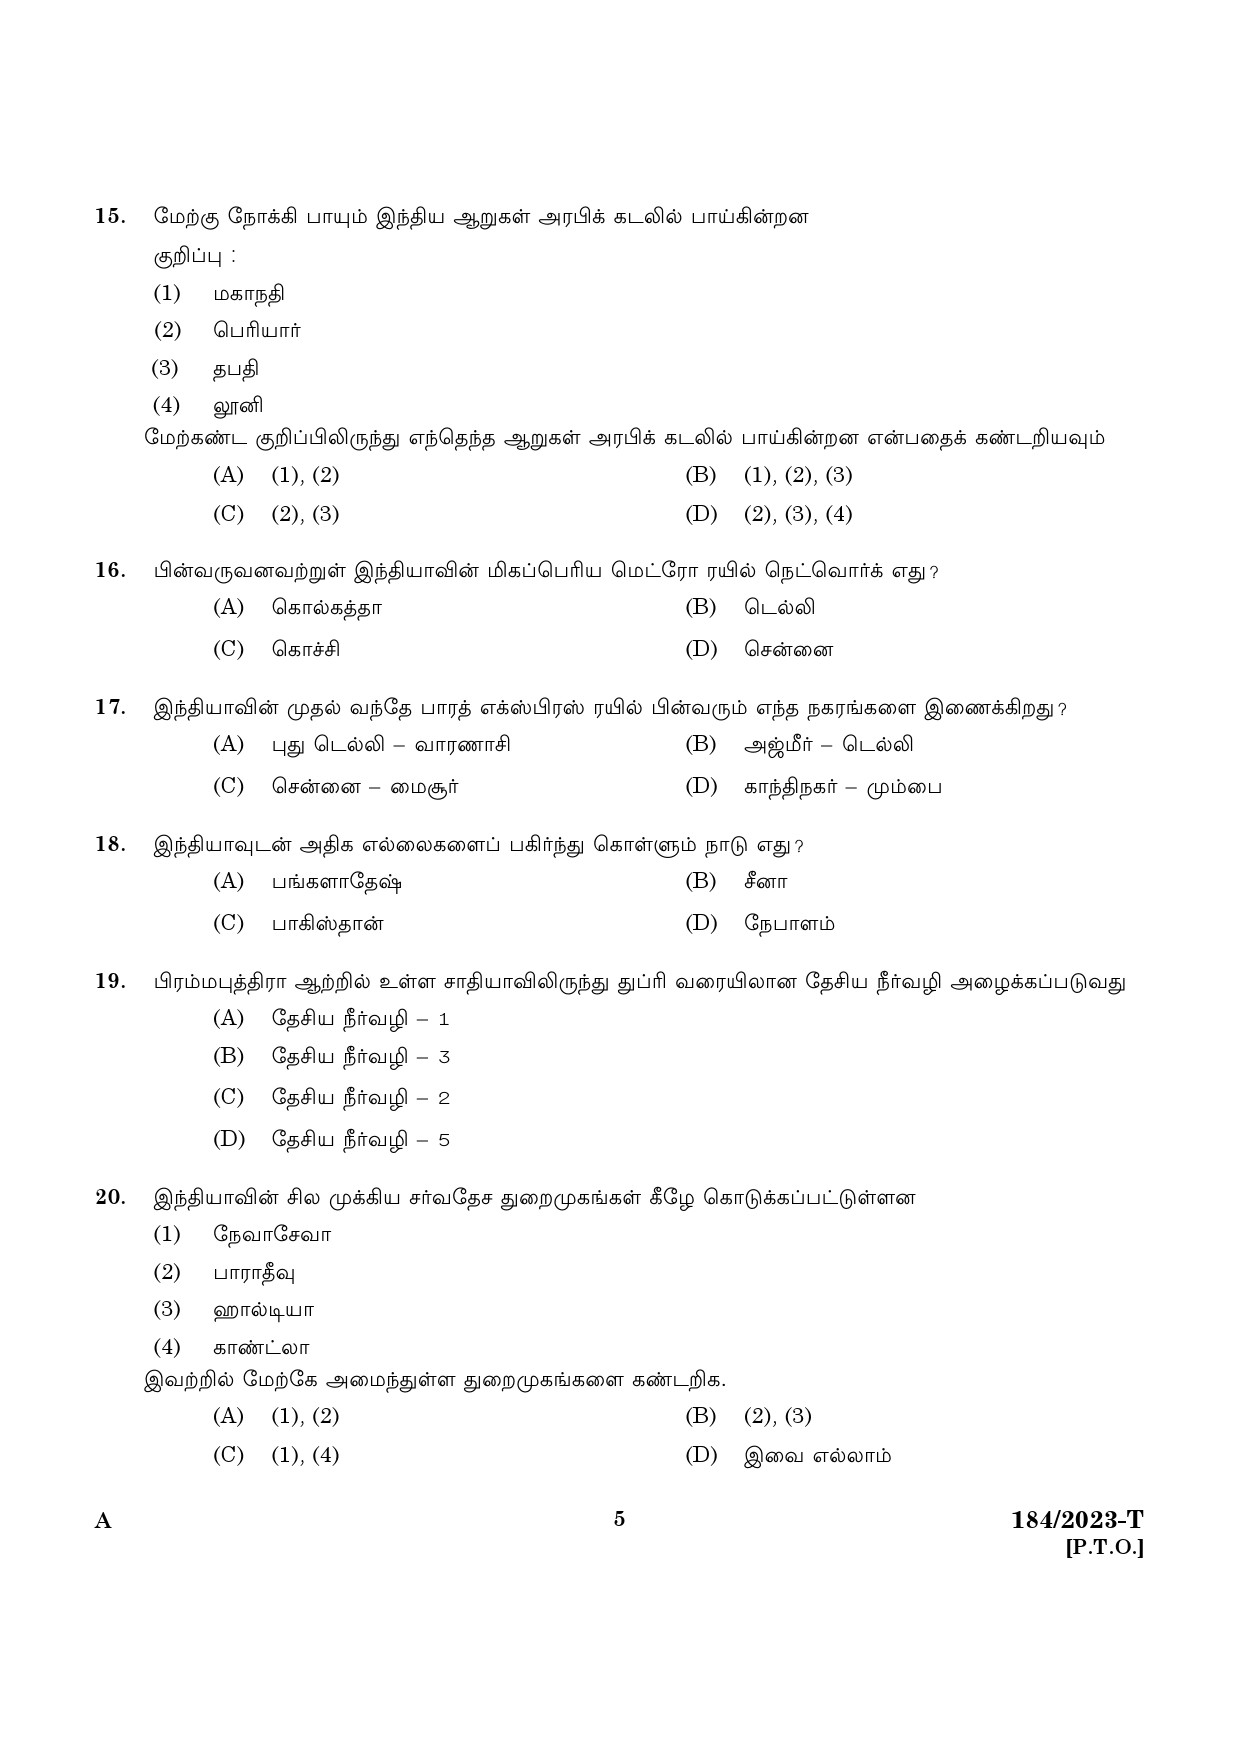 KPSC LGS Tamil Exam 2023 Code 1842023 T 3